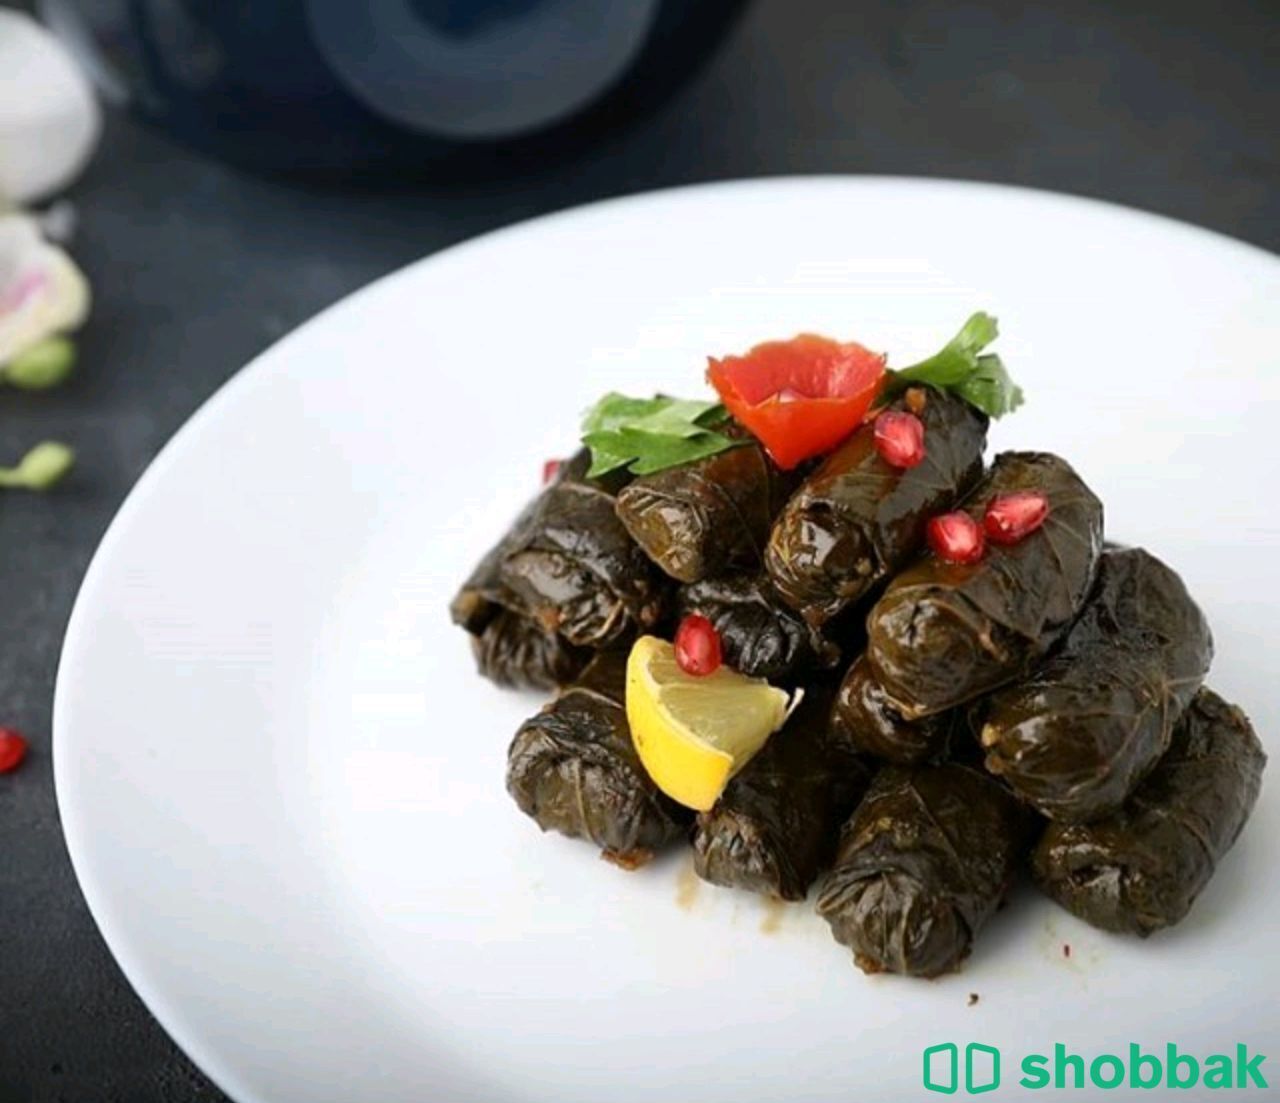 مطعم وجبات سريعة للتقبيل Shobbak Saudi Arabia